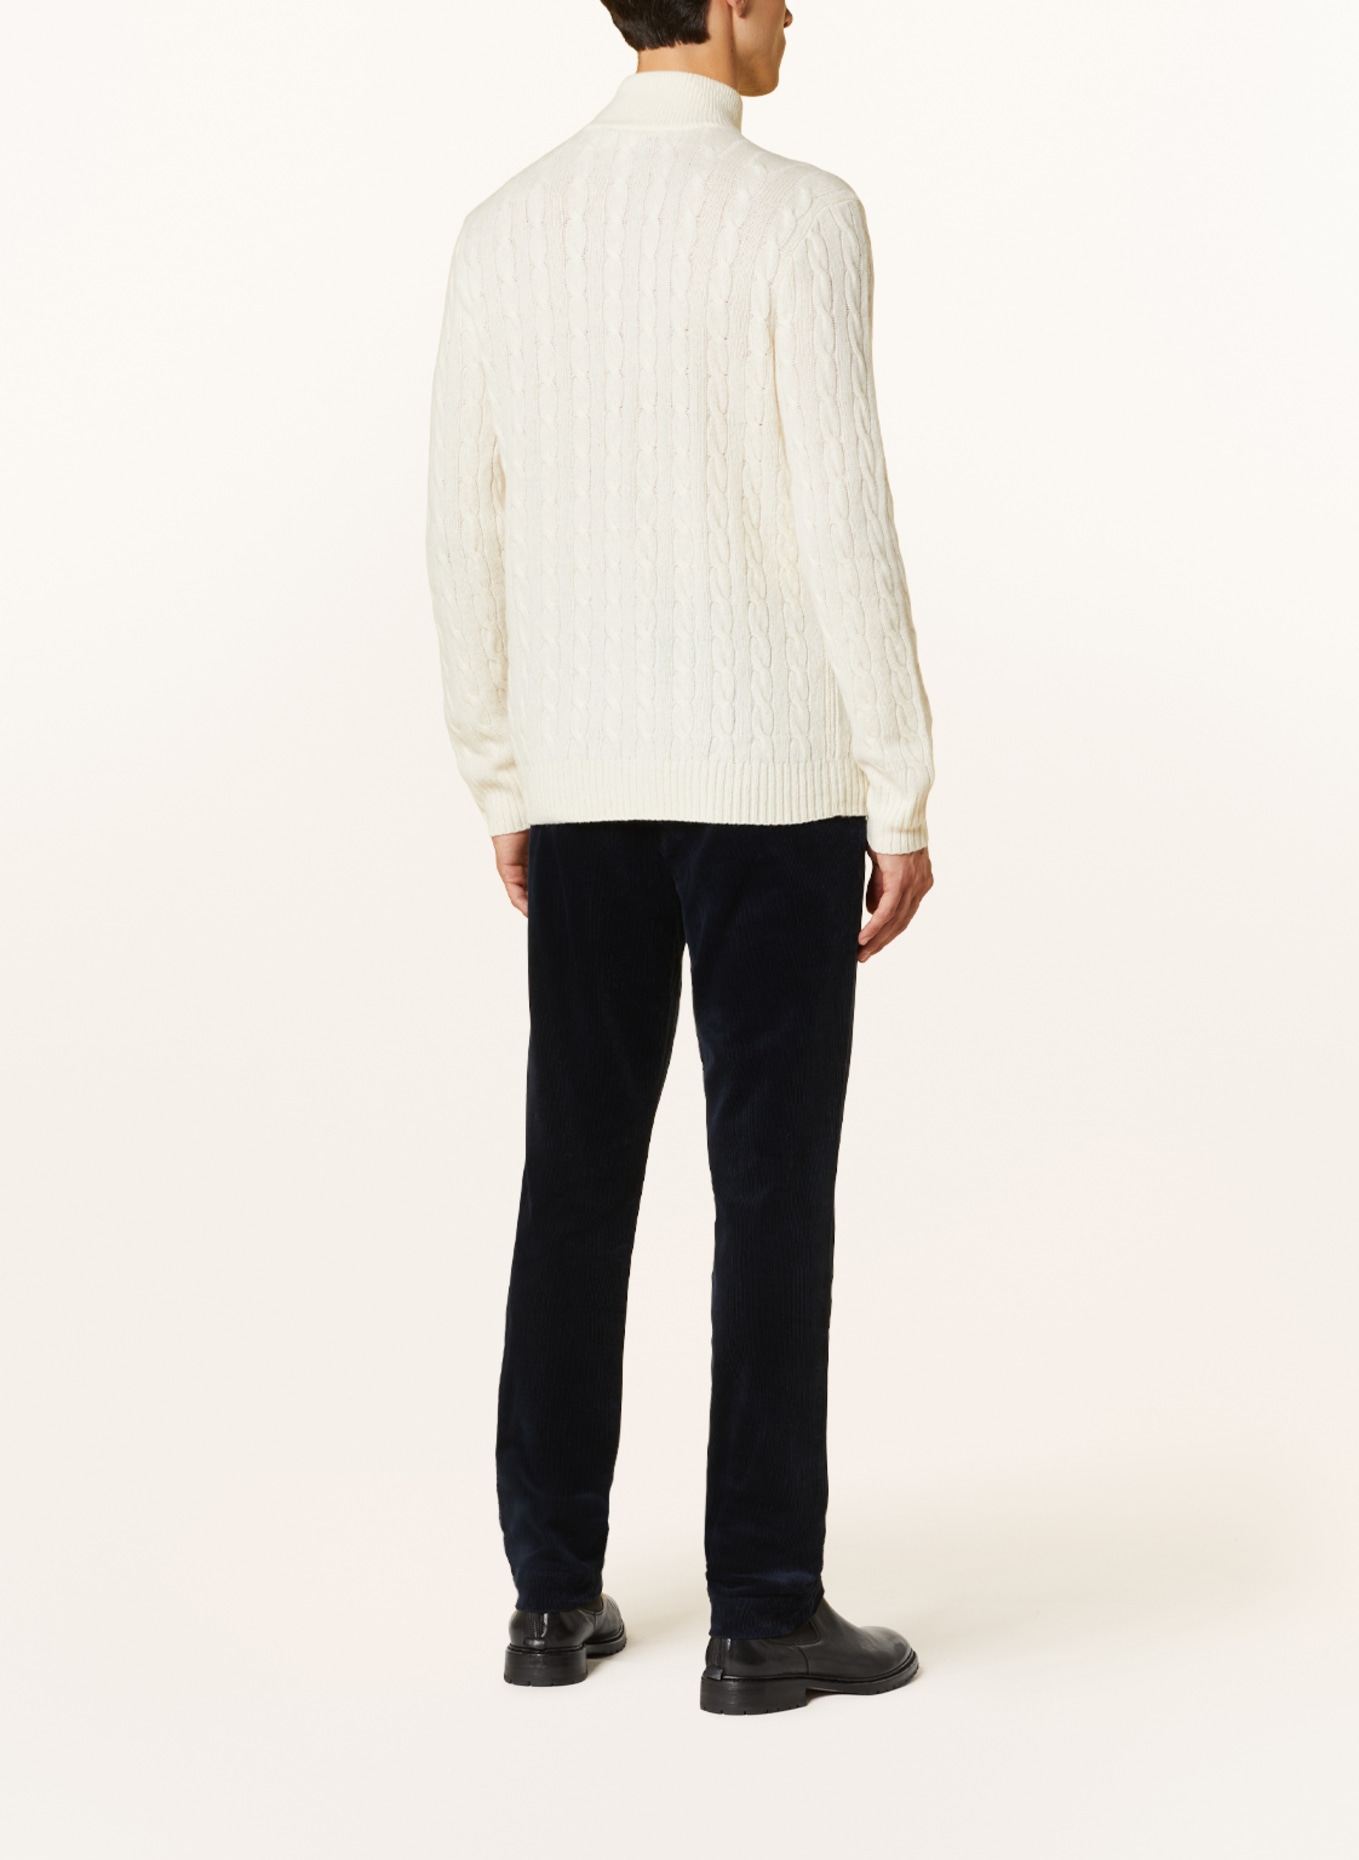 POLO RALPH LAUREN Half-zip sweater, Color: ECRU (Image 3)